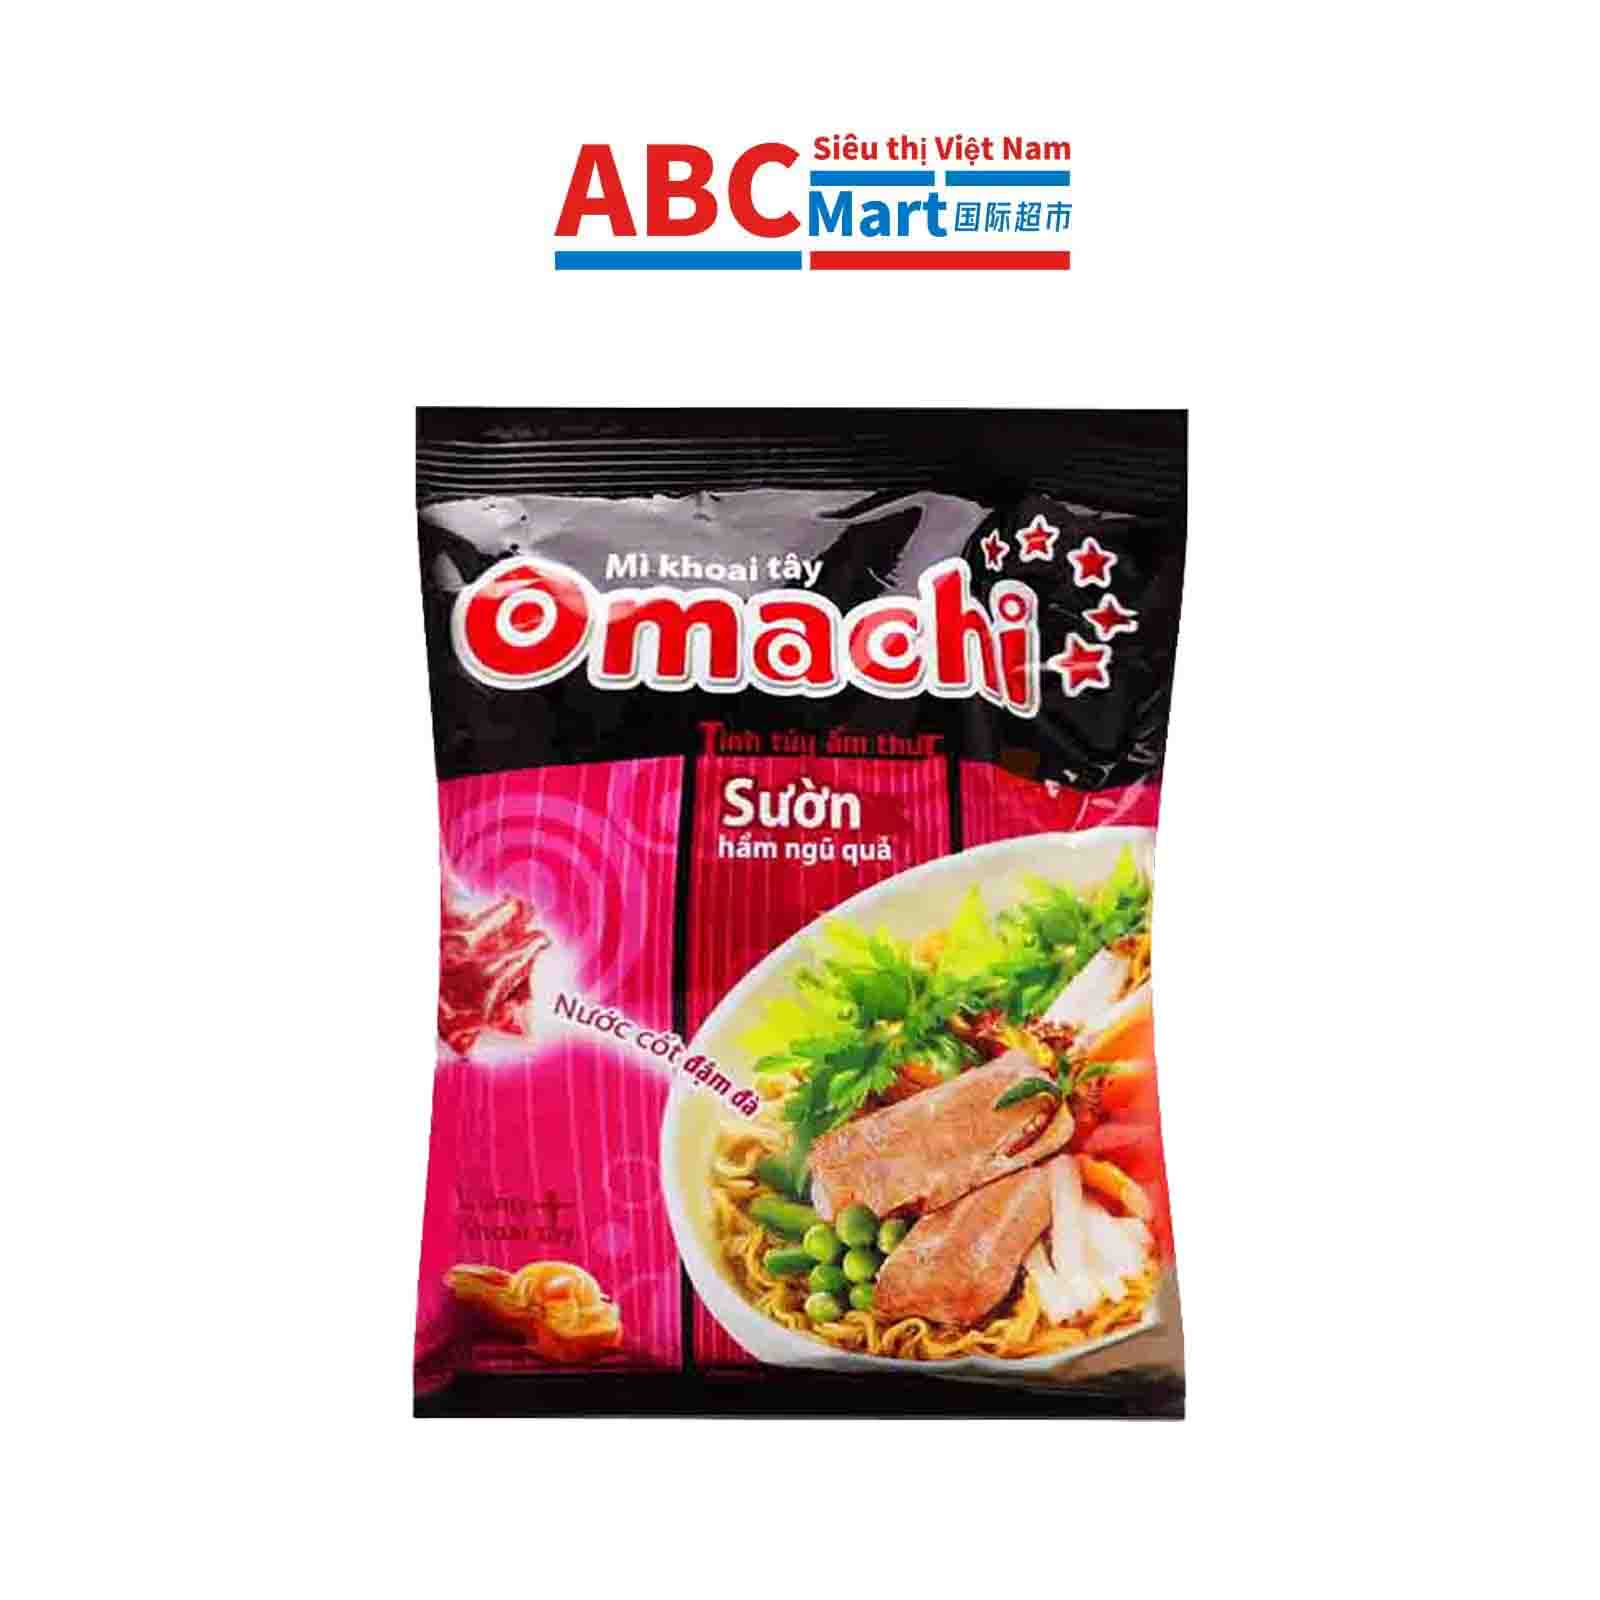 【Việt Nam-Omachi sườn hầm ngũ quả 80g】红烧排骨方便面-ABCMart 国际超市